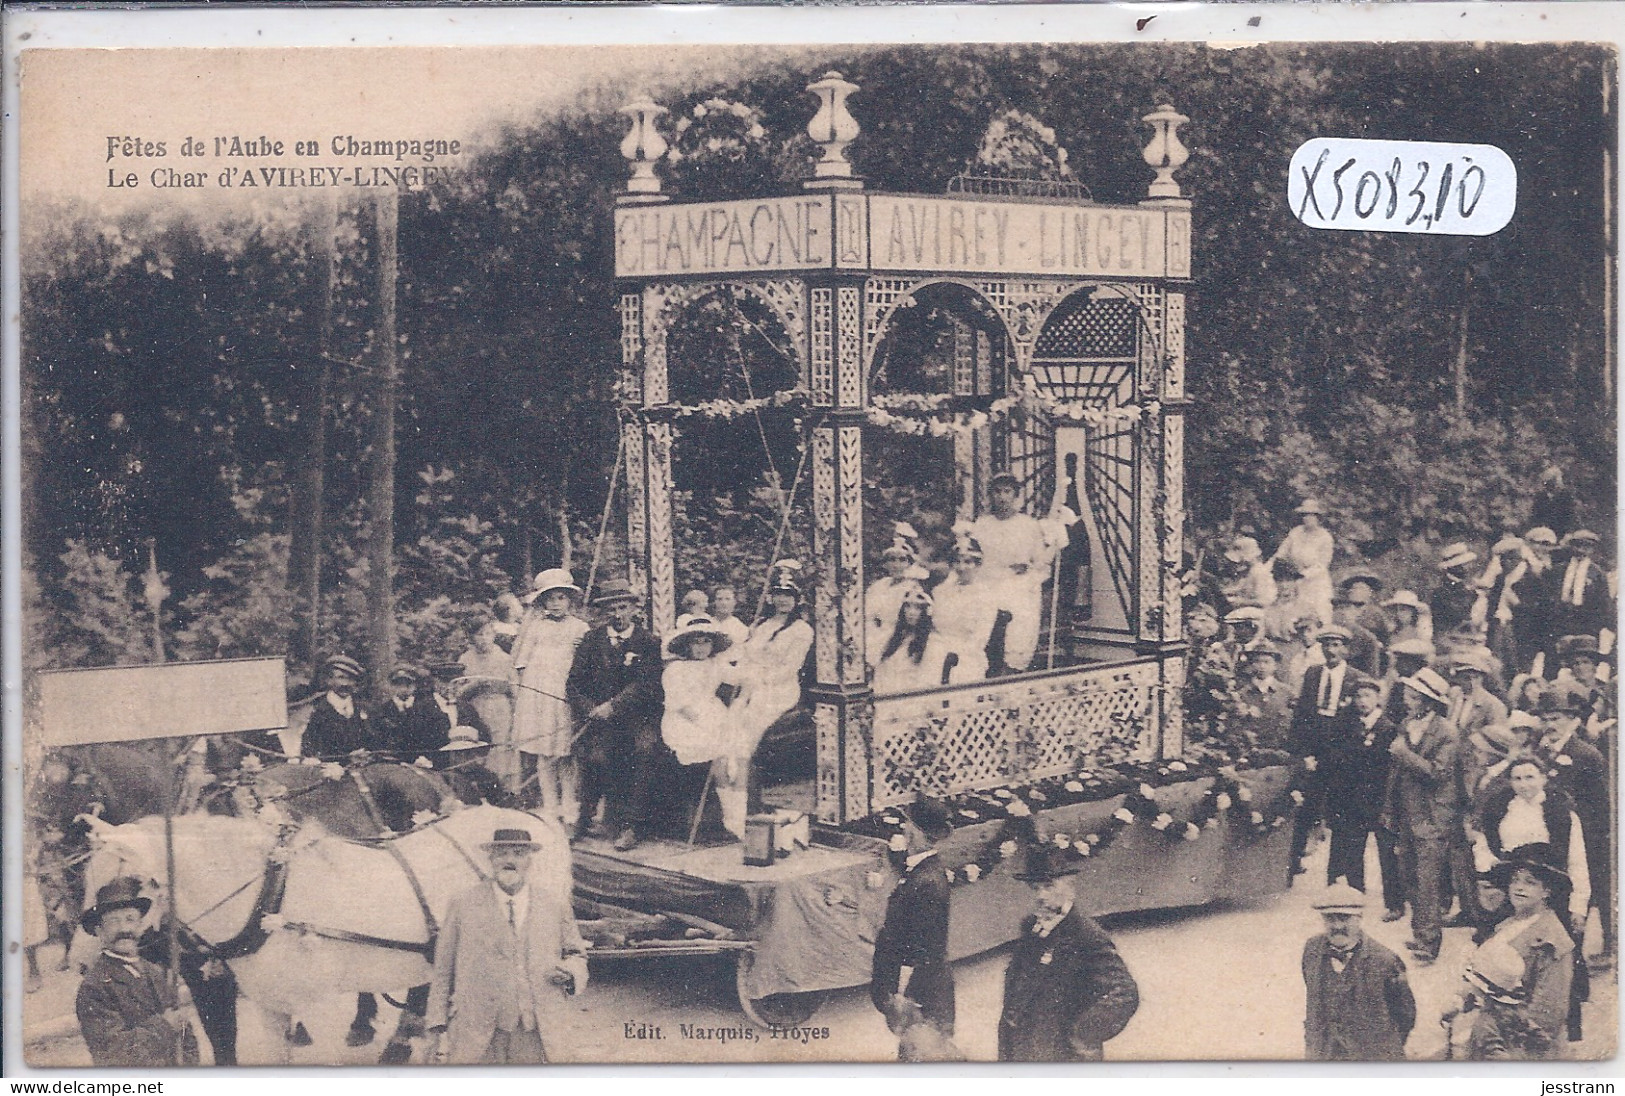 FETES DE L AUBE EN CHAMPAGNE- 1921- LE CHAR D AVIREY-LINGEY - Bar-sur-Seine